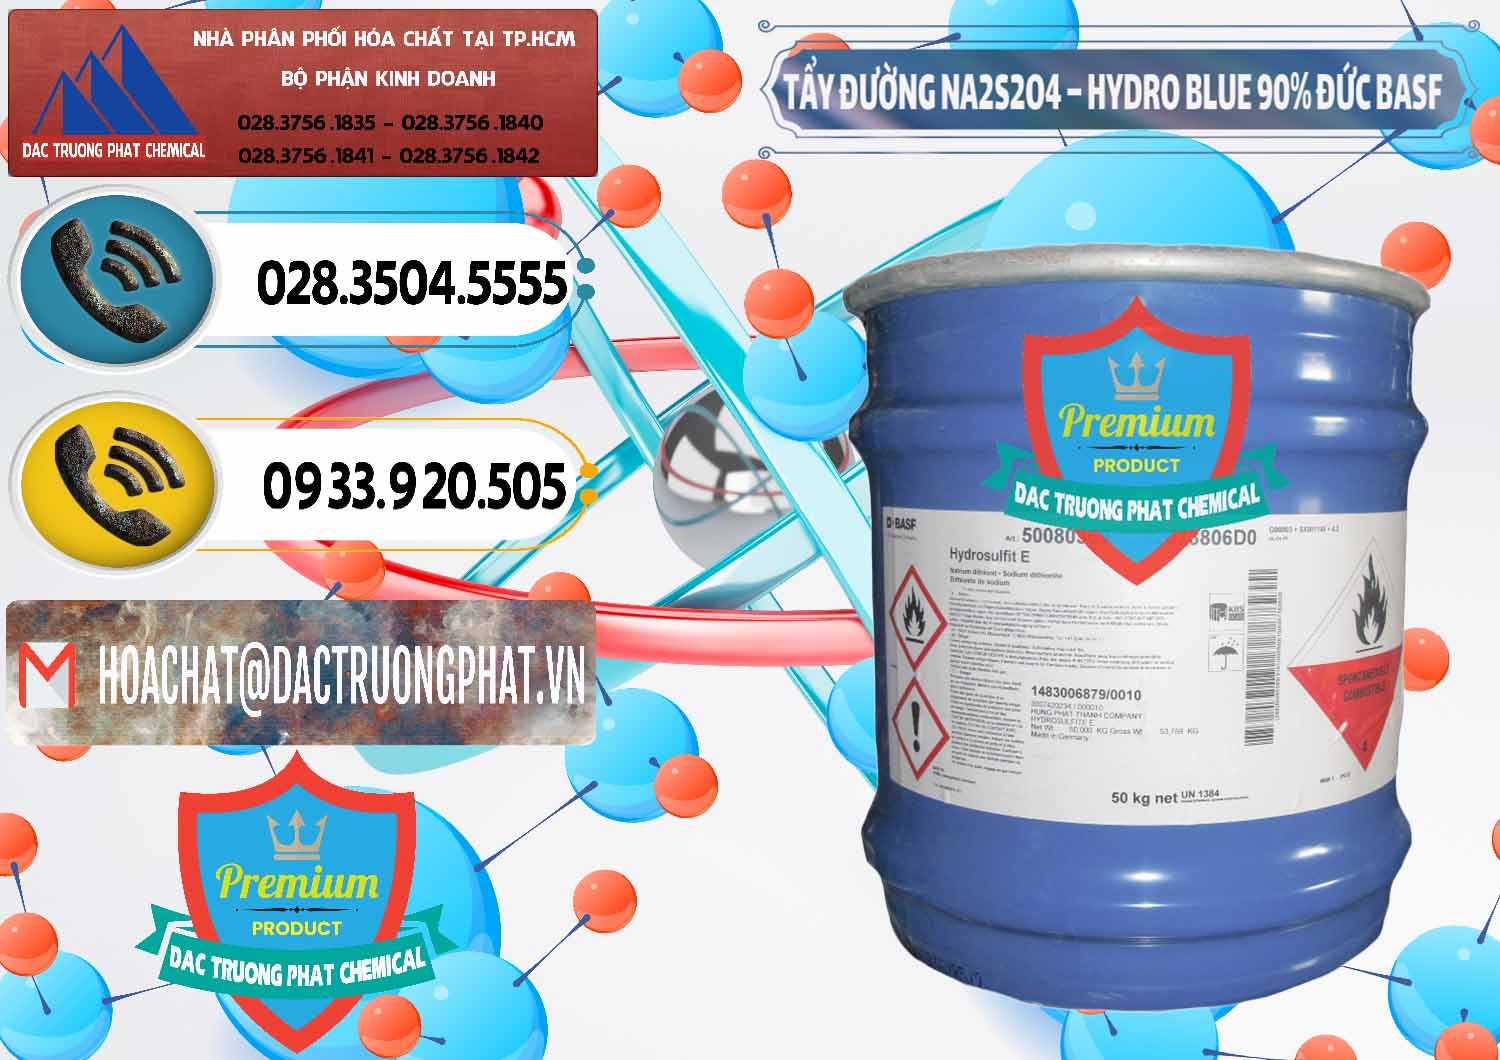 Nơi cung cấp ( bán ) Tẩy Đường NA2S2O4 – Hydro Blue 90% Thùng Lùn BASF Đức Germany - 0157 - Nơi chuyên cung cấp & kinh doanh hóa chất tại TP.HCM - hoachatdetnhuom.vn